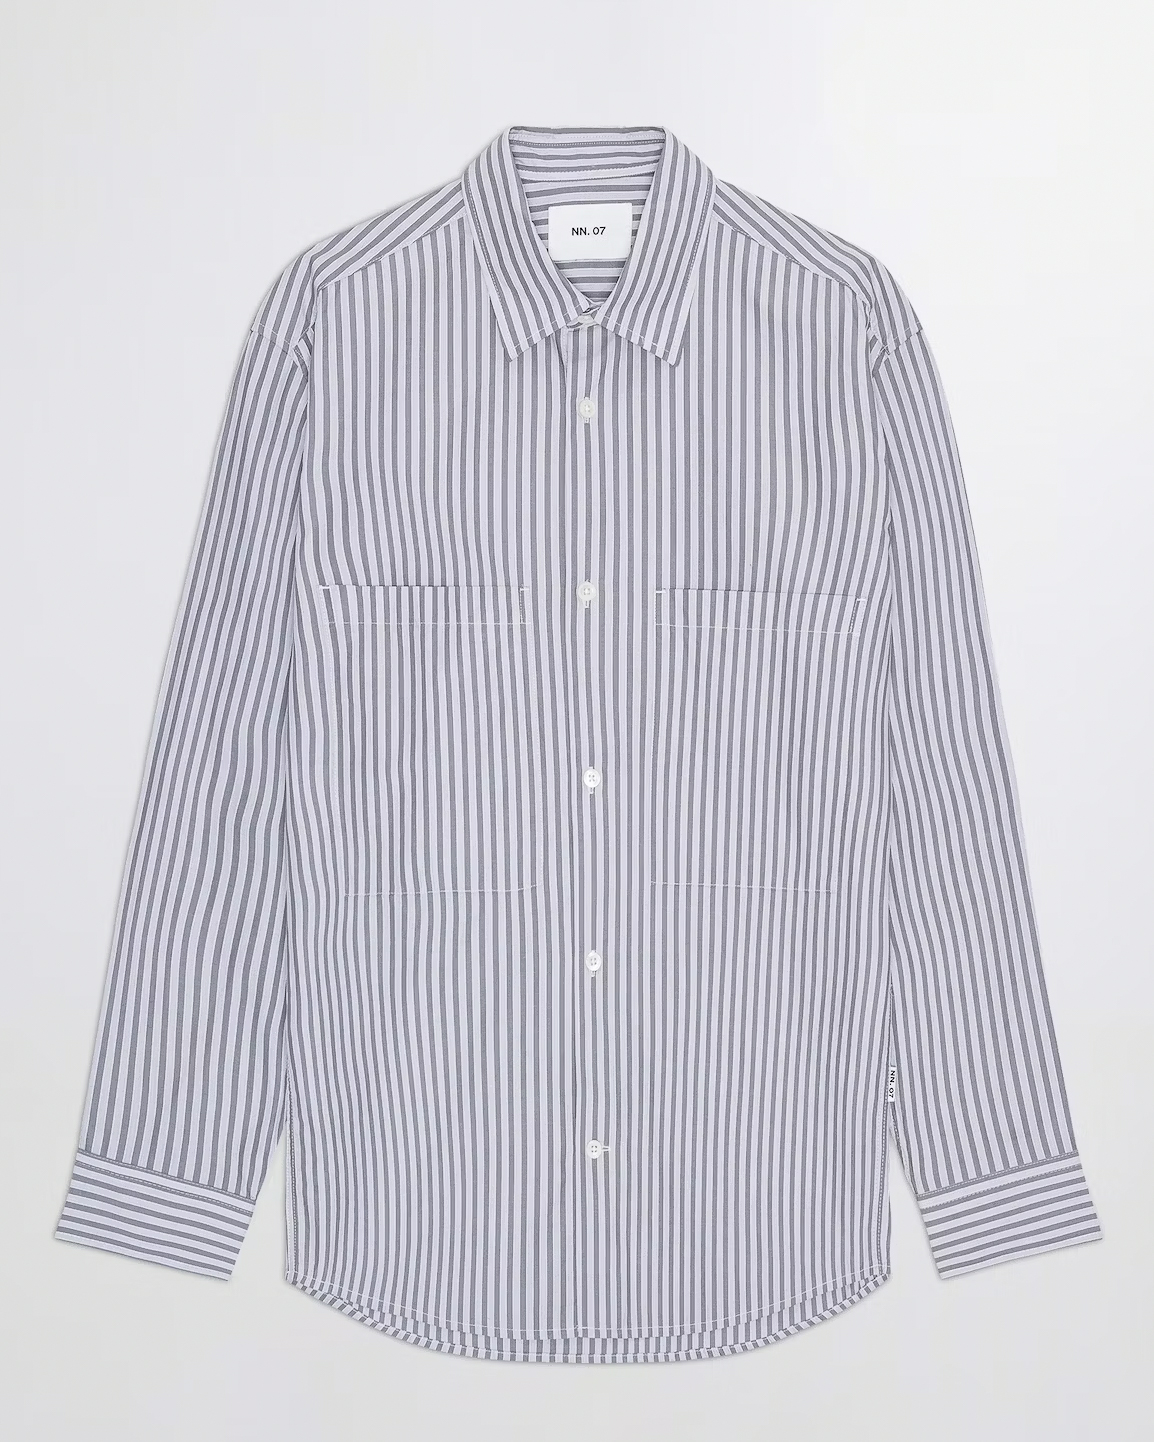 Skjorta Freddy 5973 - Grey Stripe - L